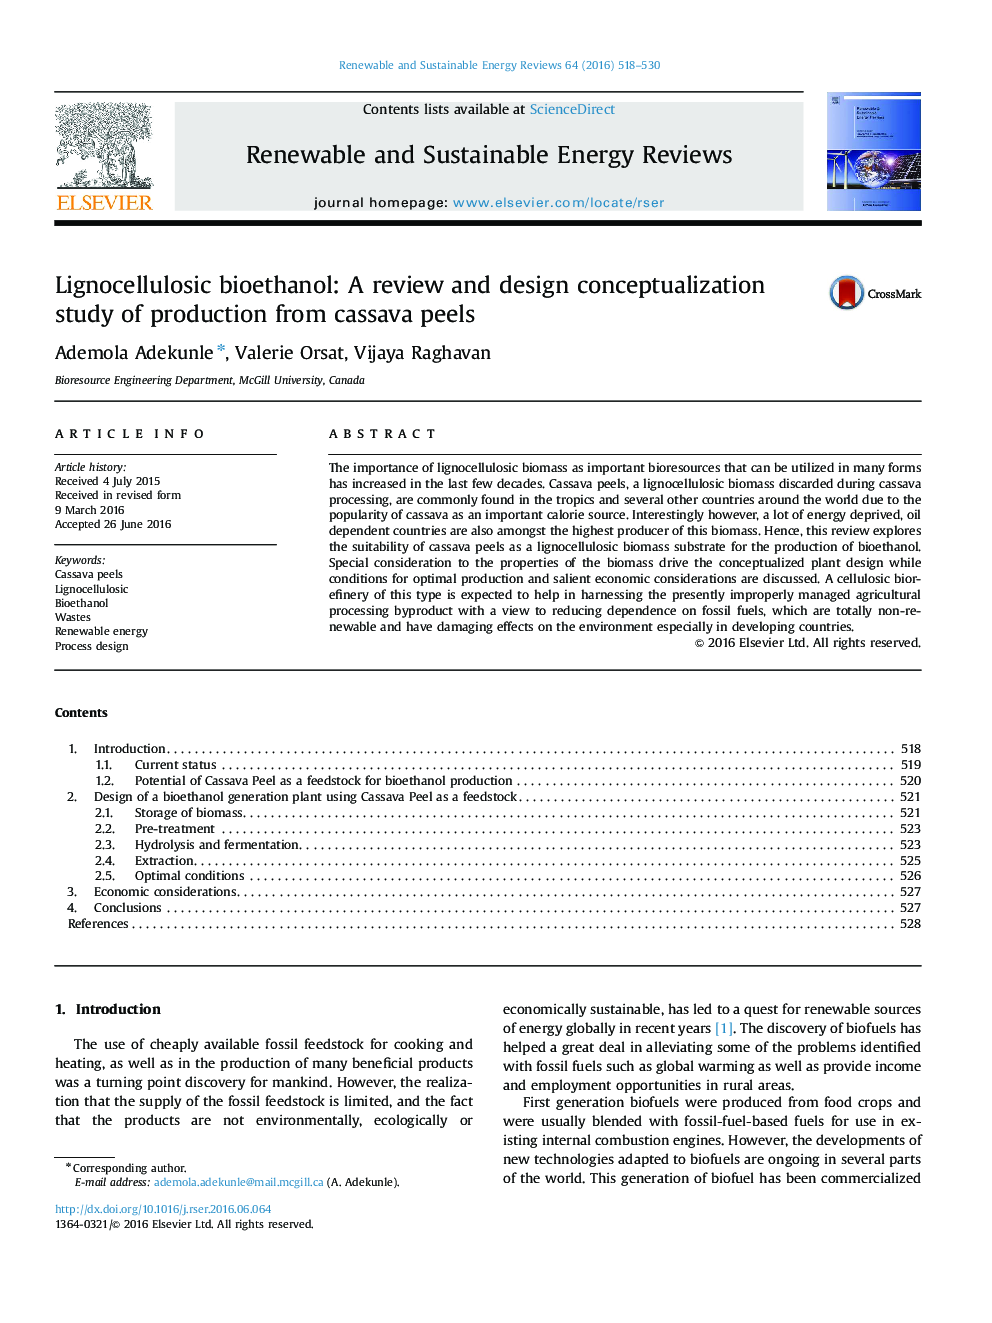 بیوتکنول لیگنوسلولز: بررسی و طراحی مفهوم سازی محصول تولیدی از پالای مناسبی 